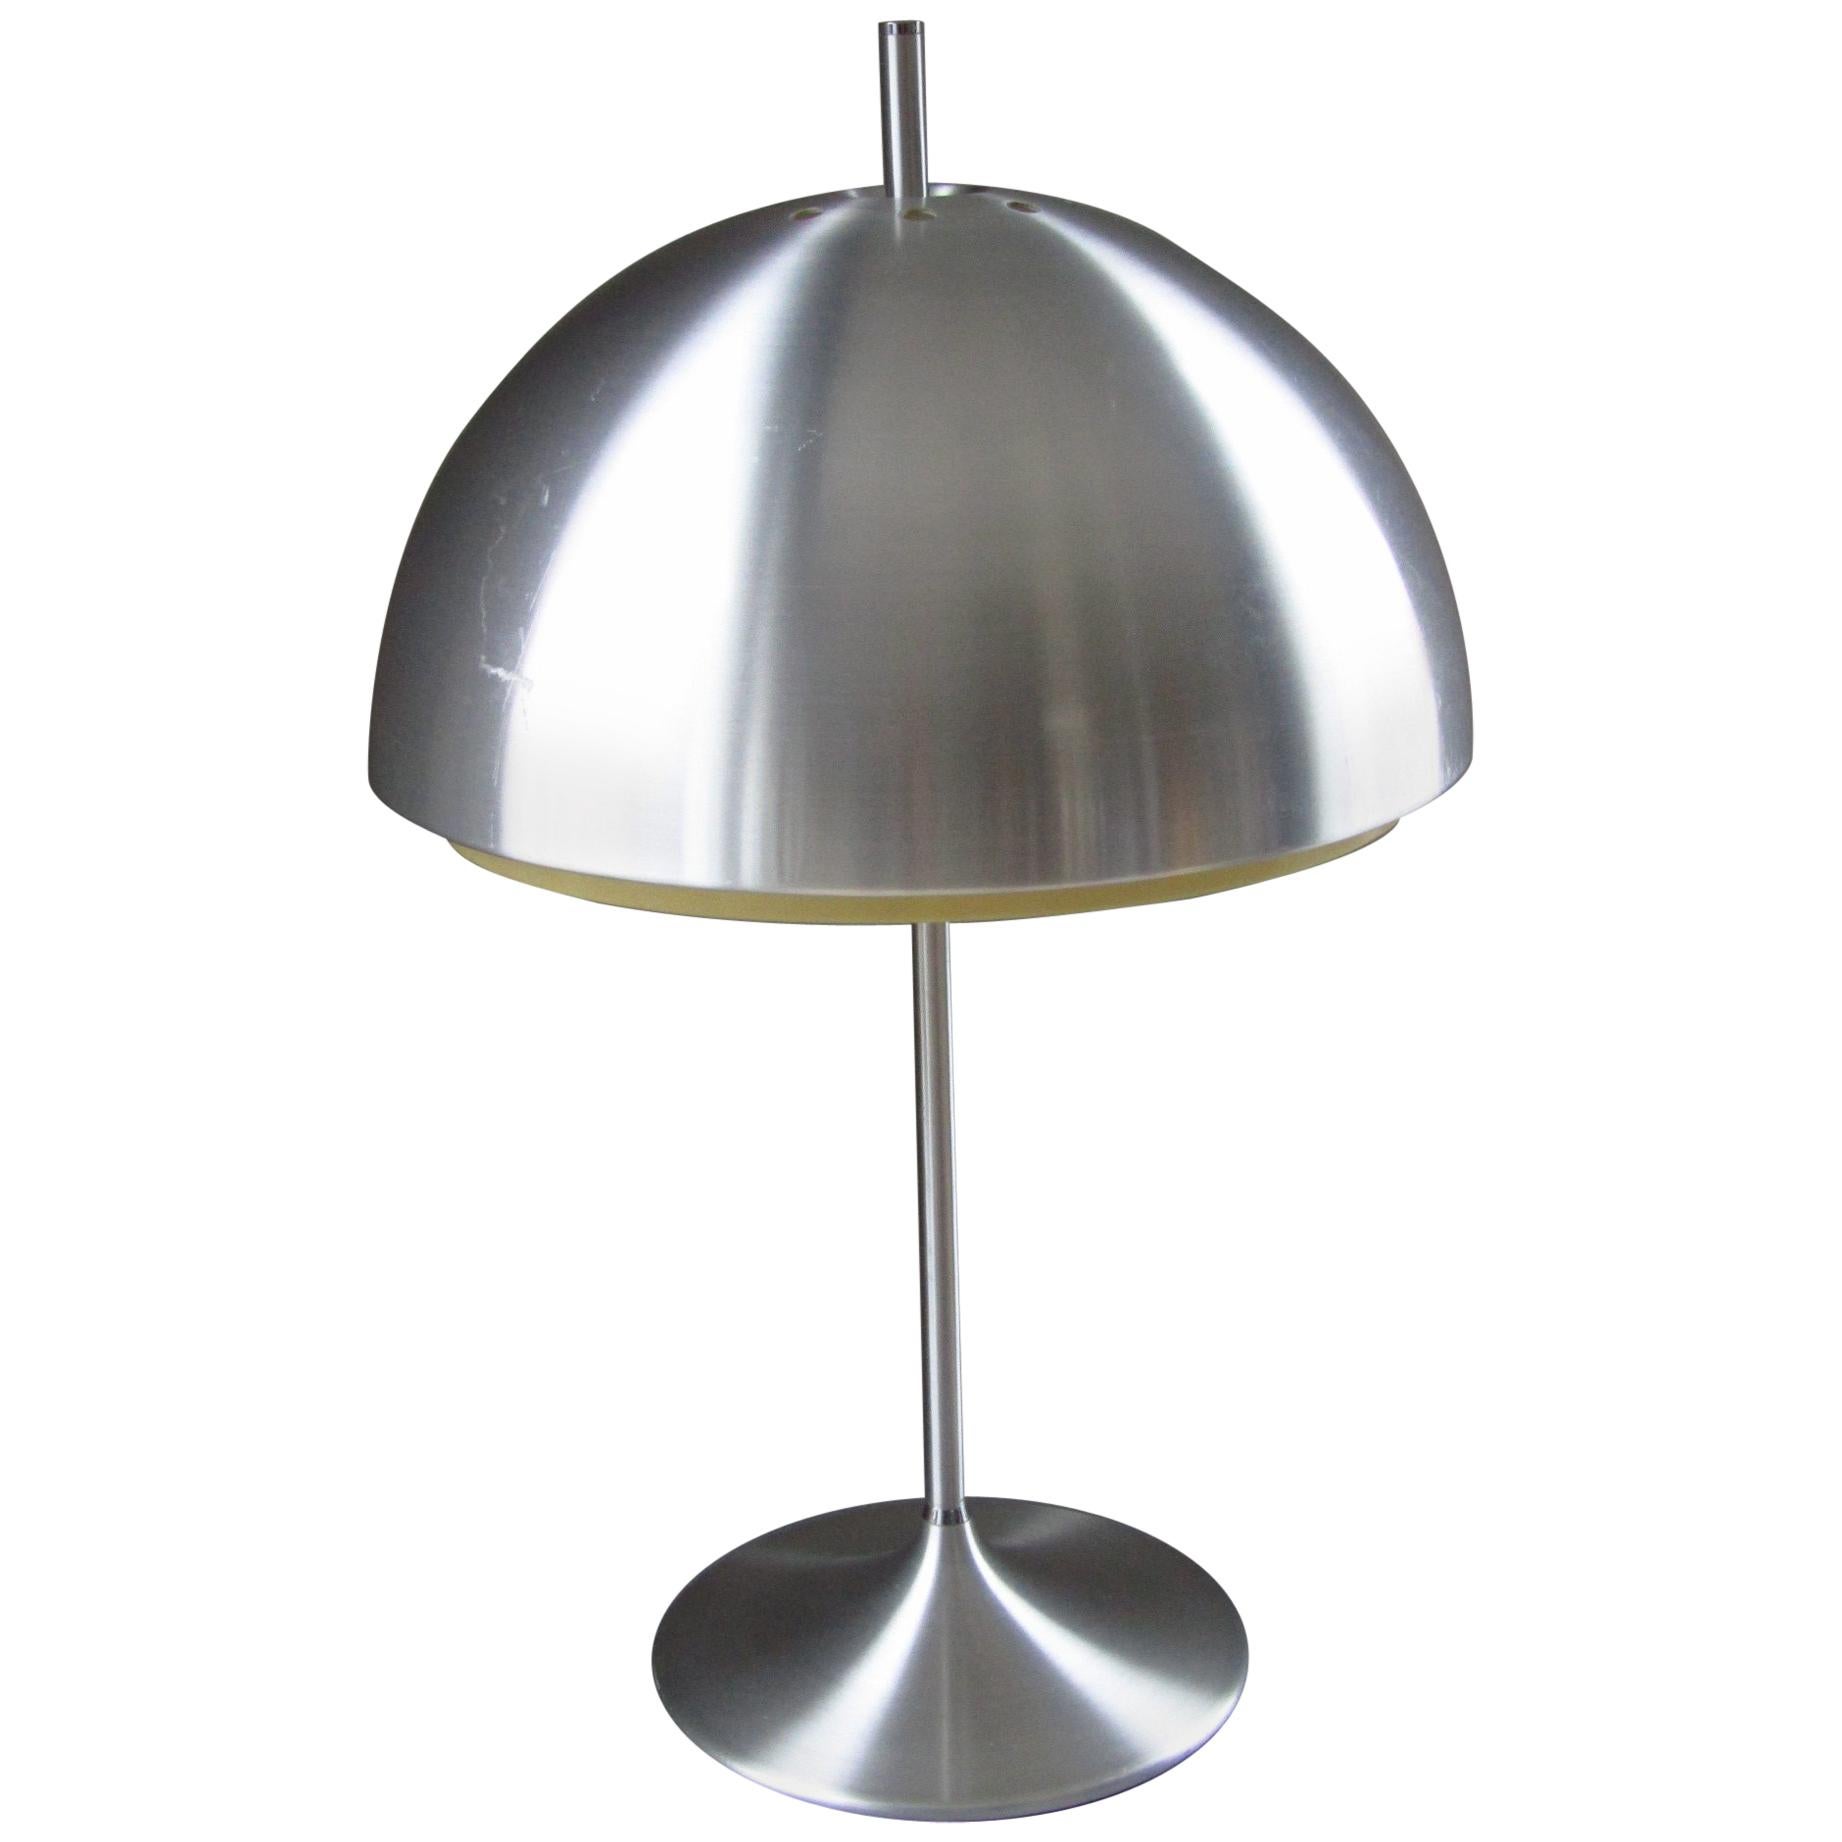 Midcentury Danish Pop Art Tulip Foot Aluminium Table Lamp, 1960 For Sale